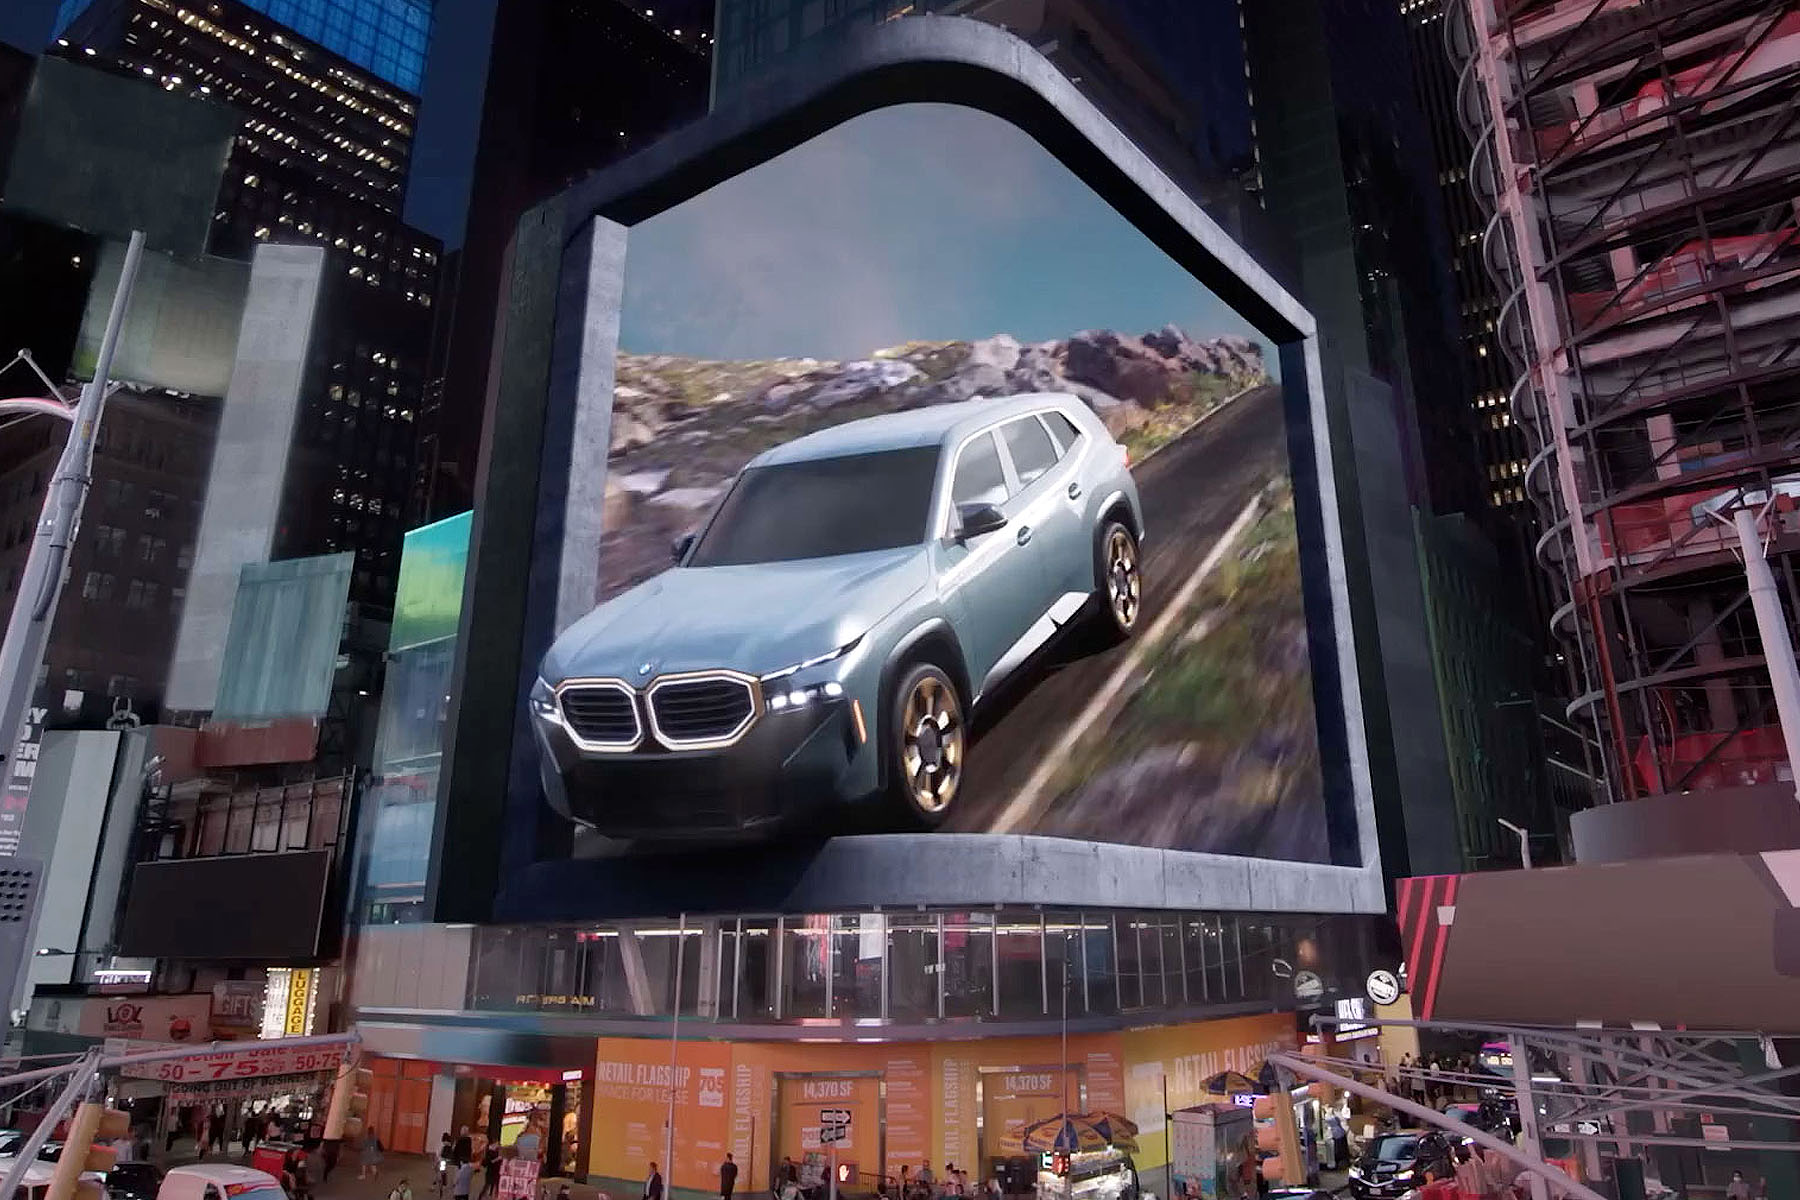 BMW Times Square New York 3D Billboard